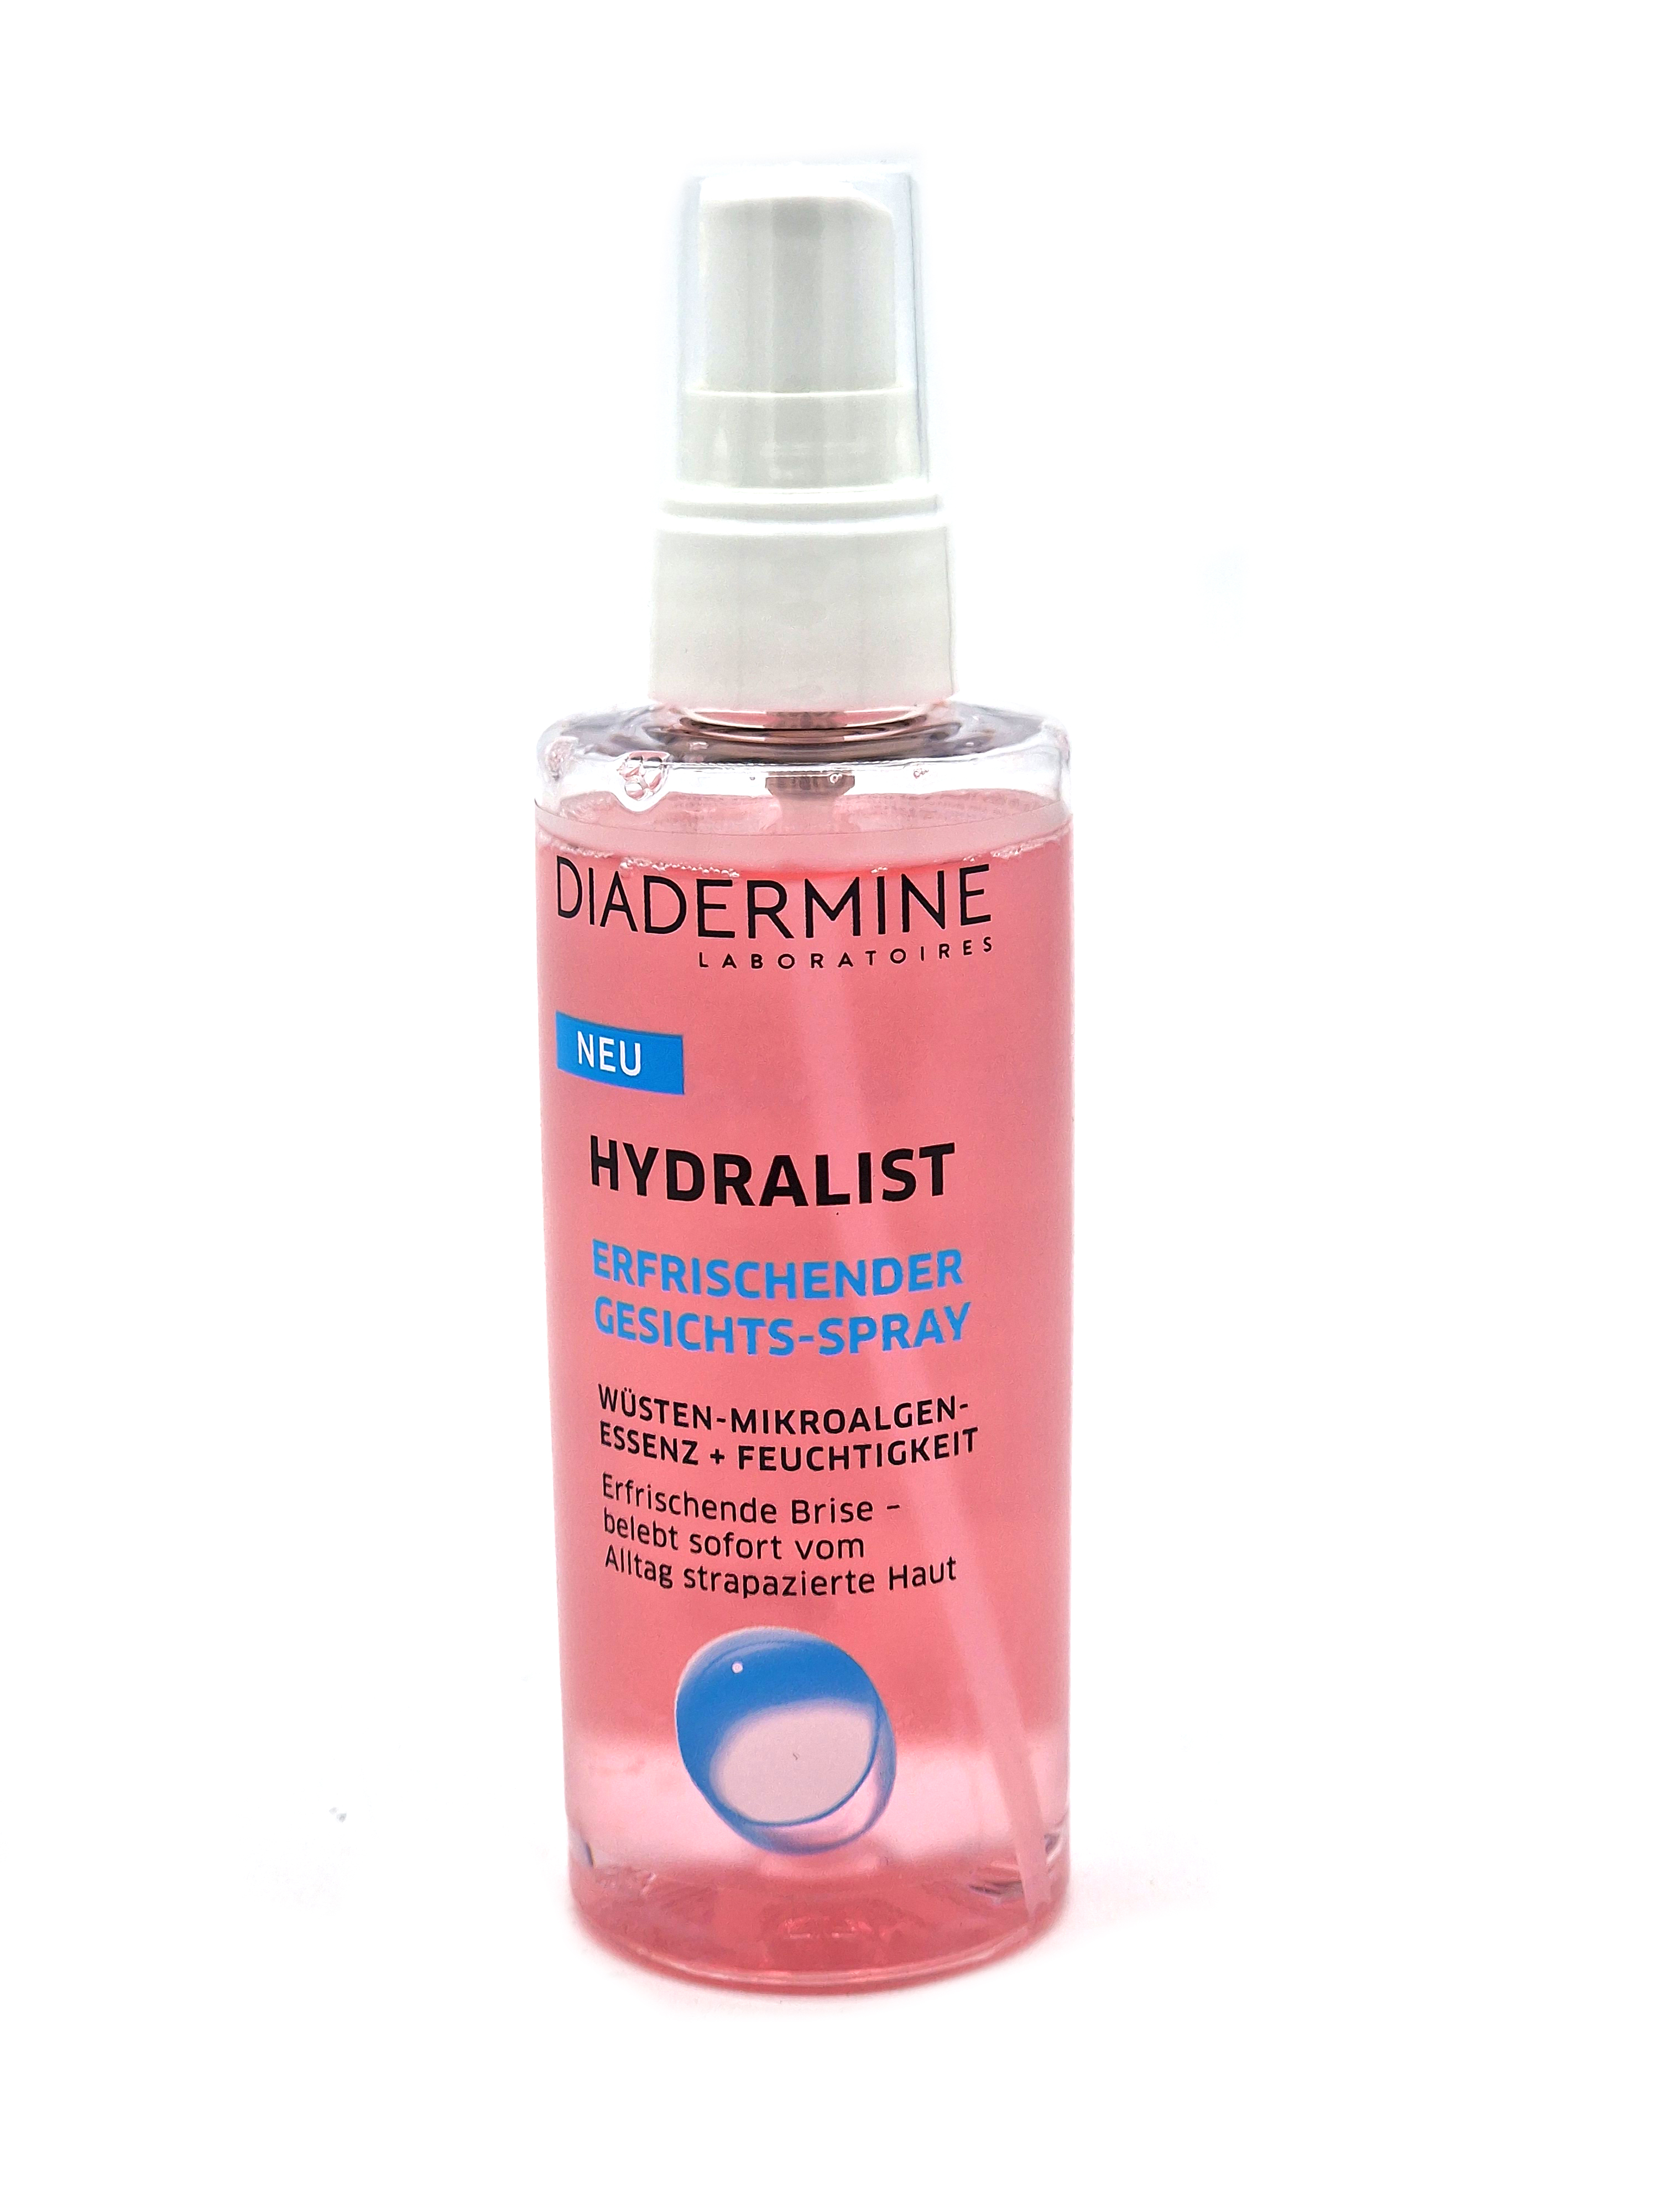 Diadermine Hydralist erfrischender Gesichts-Spray 100ml